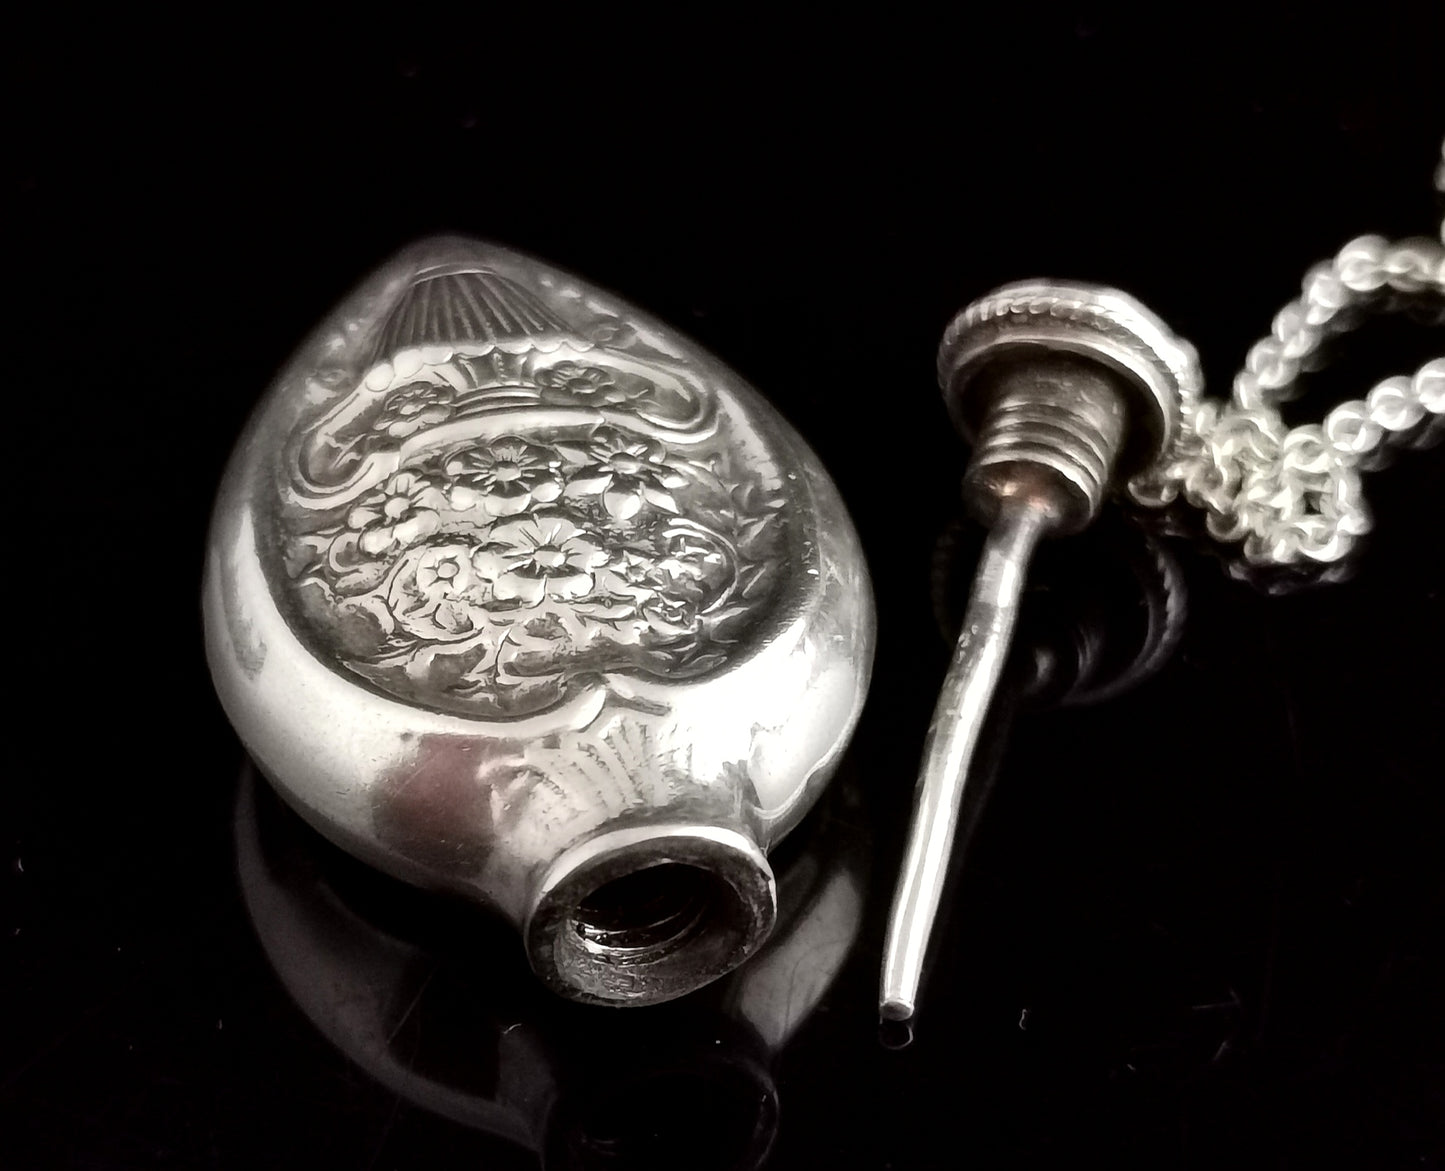 Vintage sterling silver scent bottle pendant, necklace